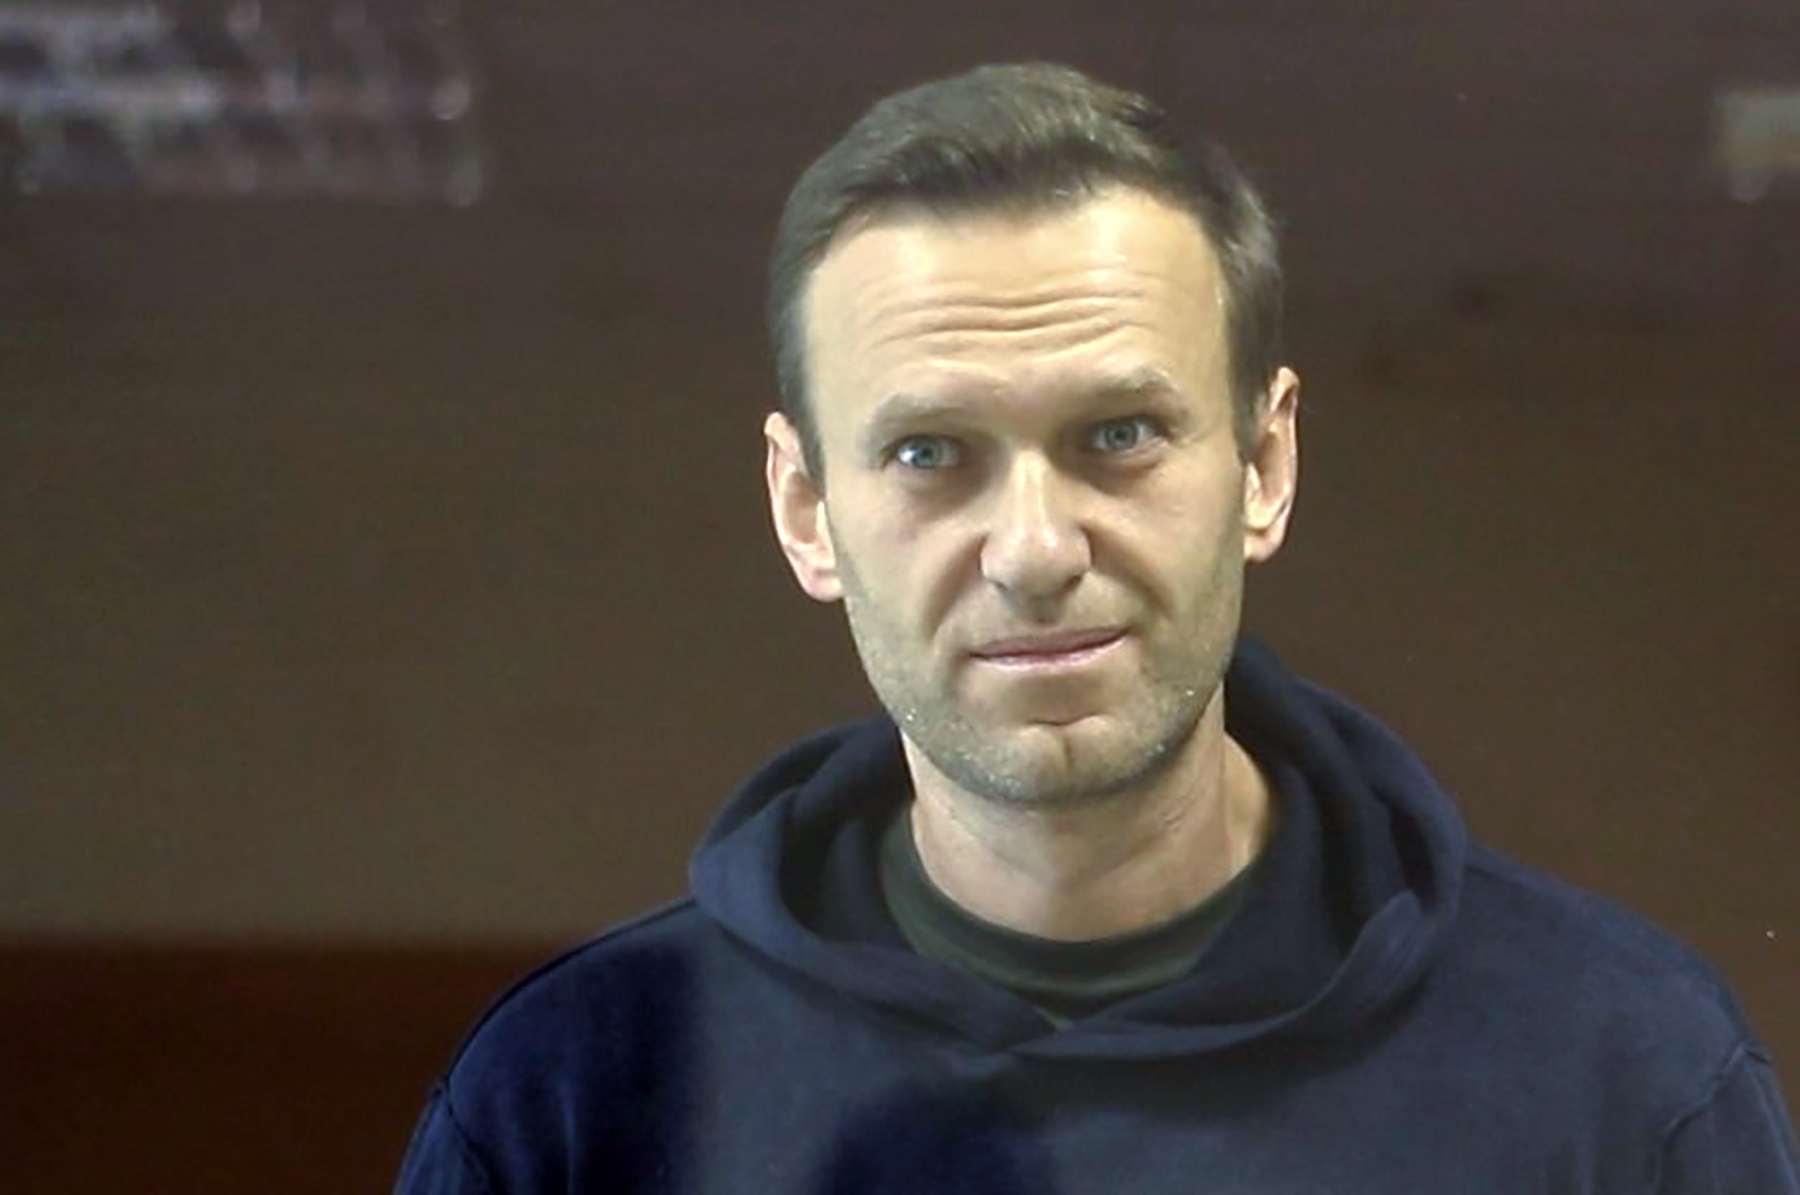  
Навальный против ветерана Игната Сергеевича Артёменко: первый день суда